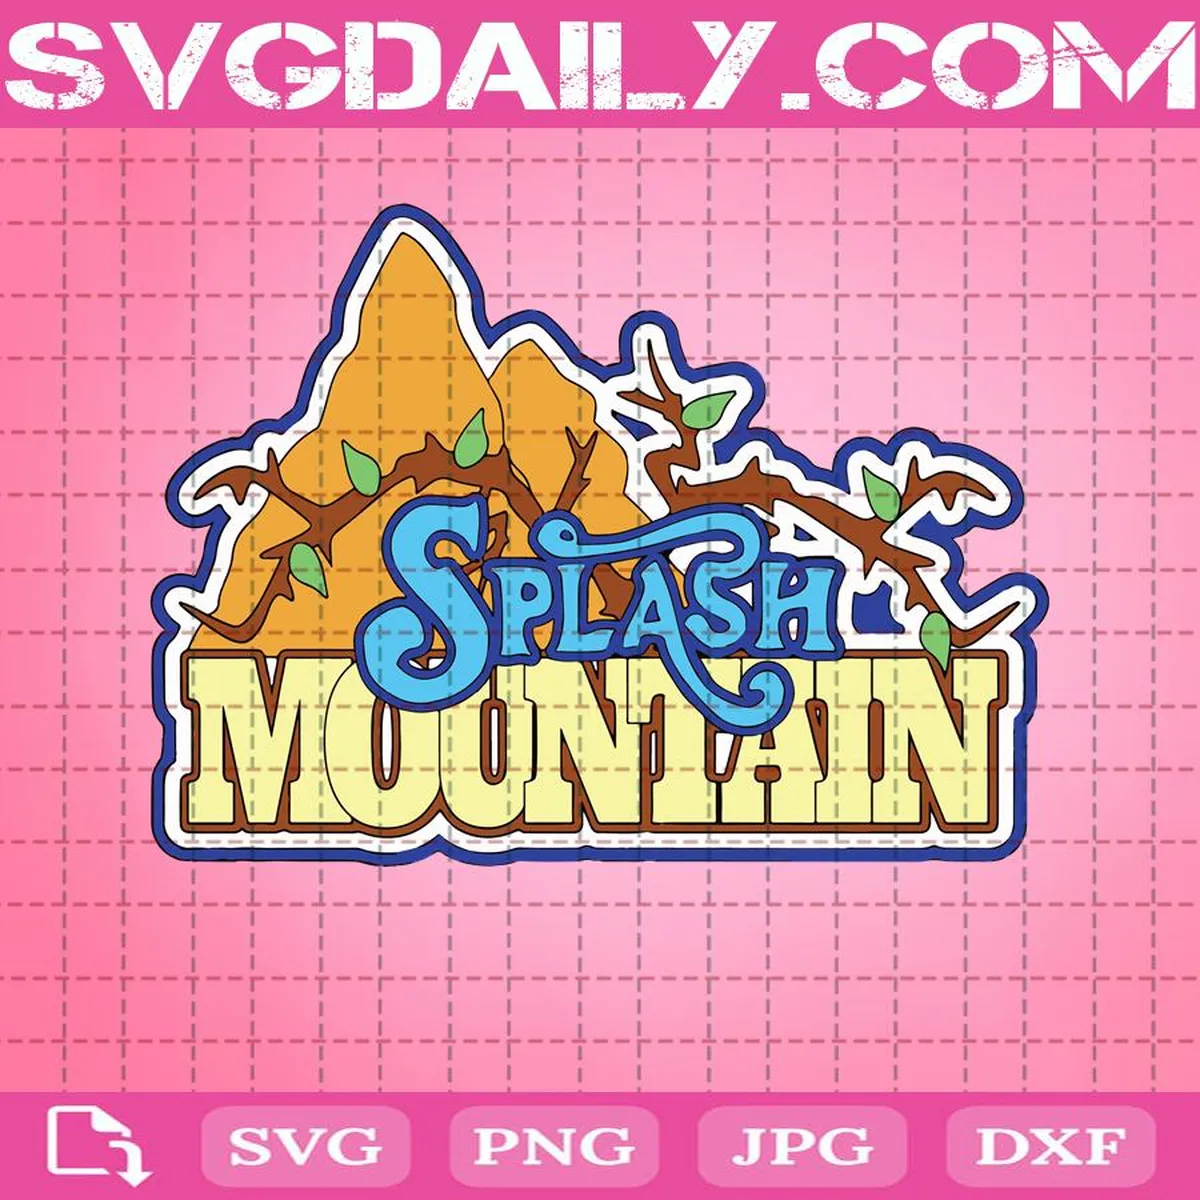 Splash Mountain Svg, Disneyland Attraction Svg, Disney World Svg, Splash Mountain Cut File, Disney Svg, Instant Download